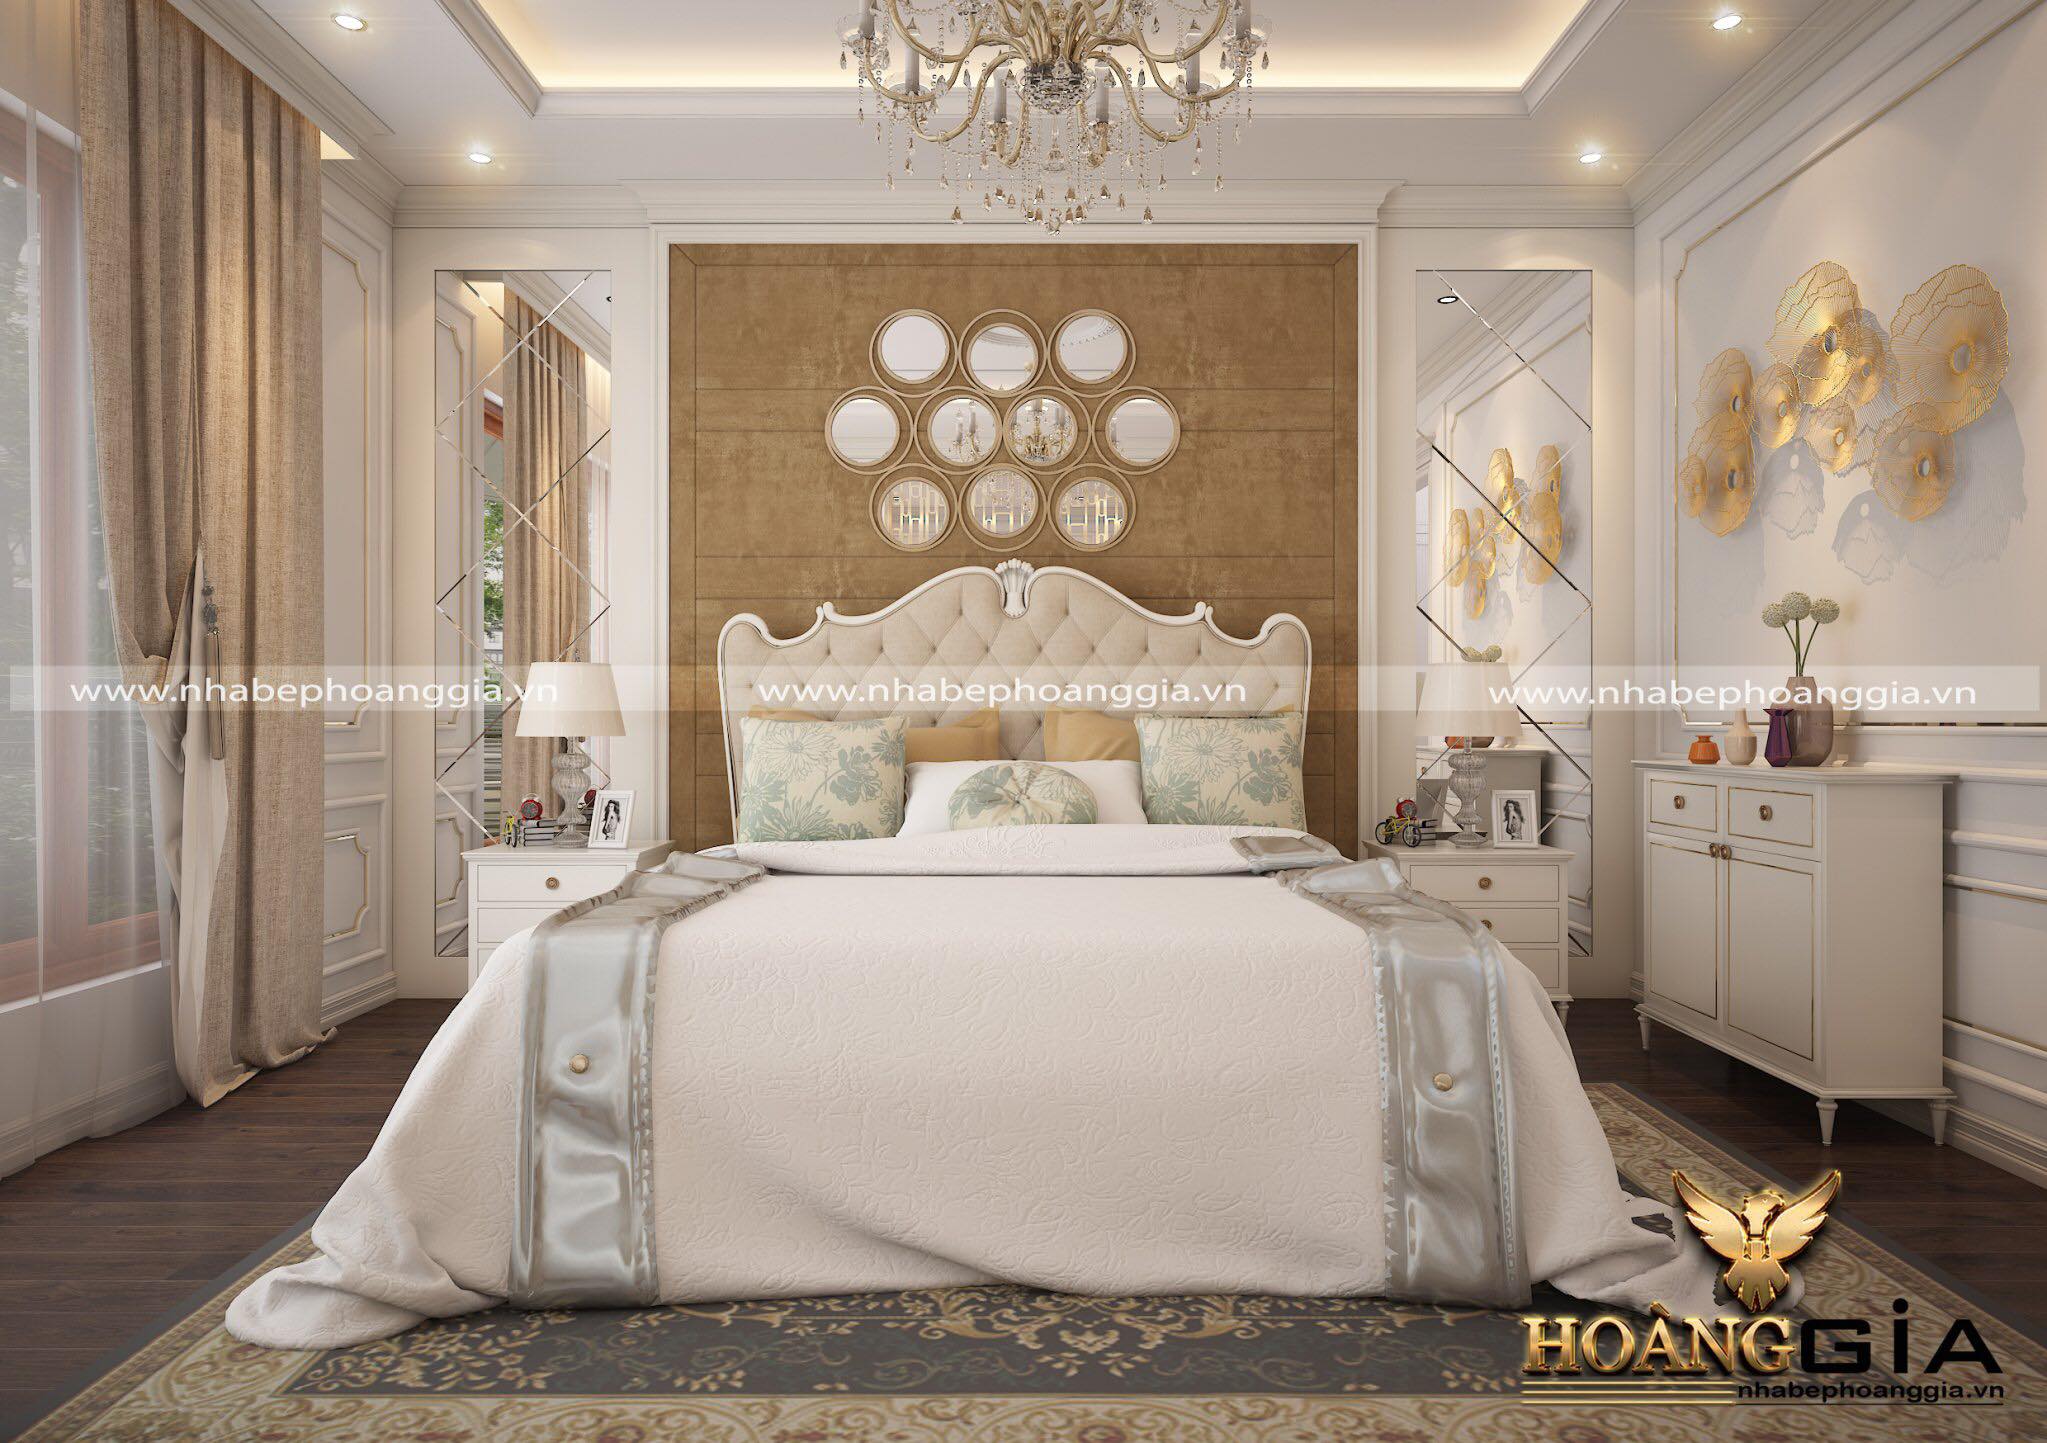 Mẫu phòng ngủ tân cổ điển đẹp sang trọng, đẳng cấp với tone màu trắng